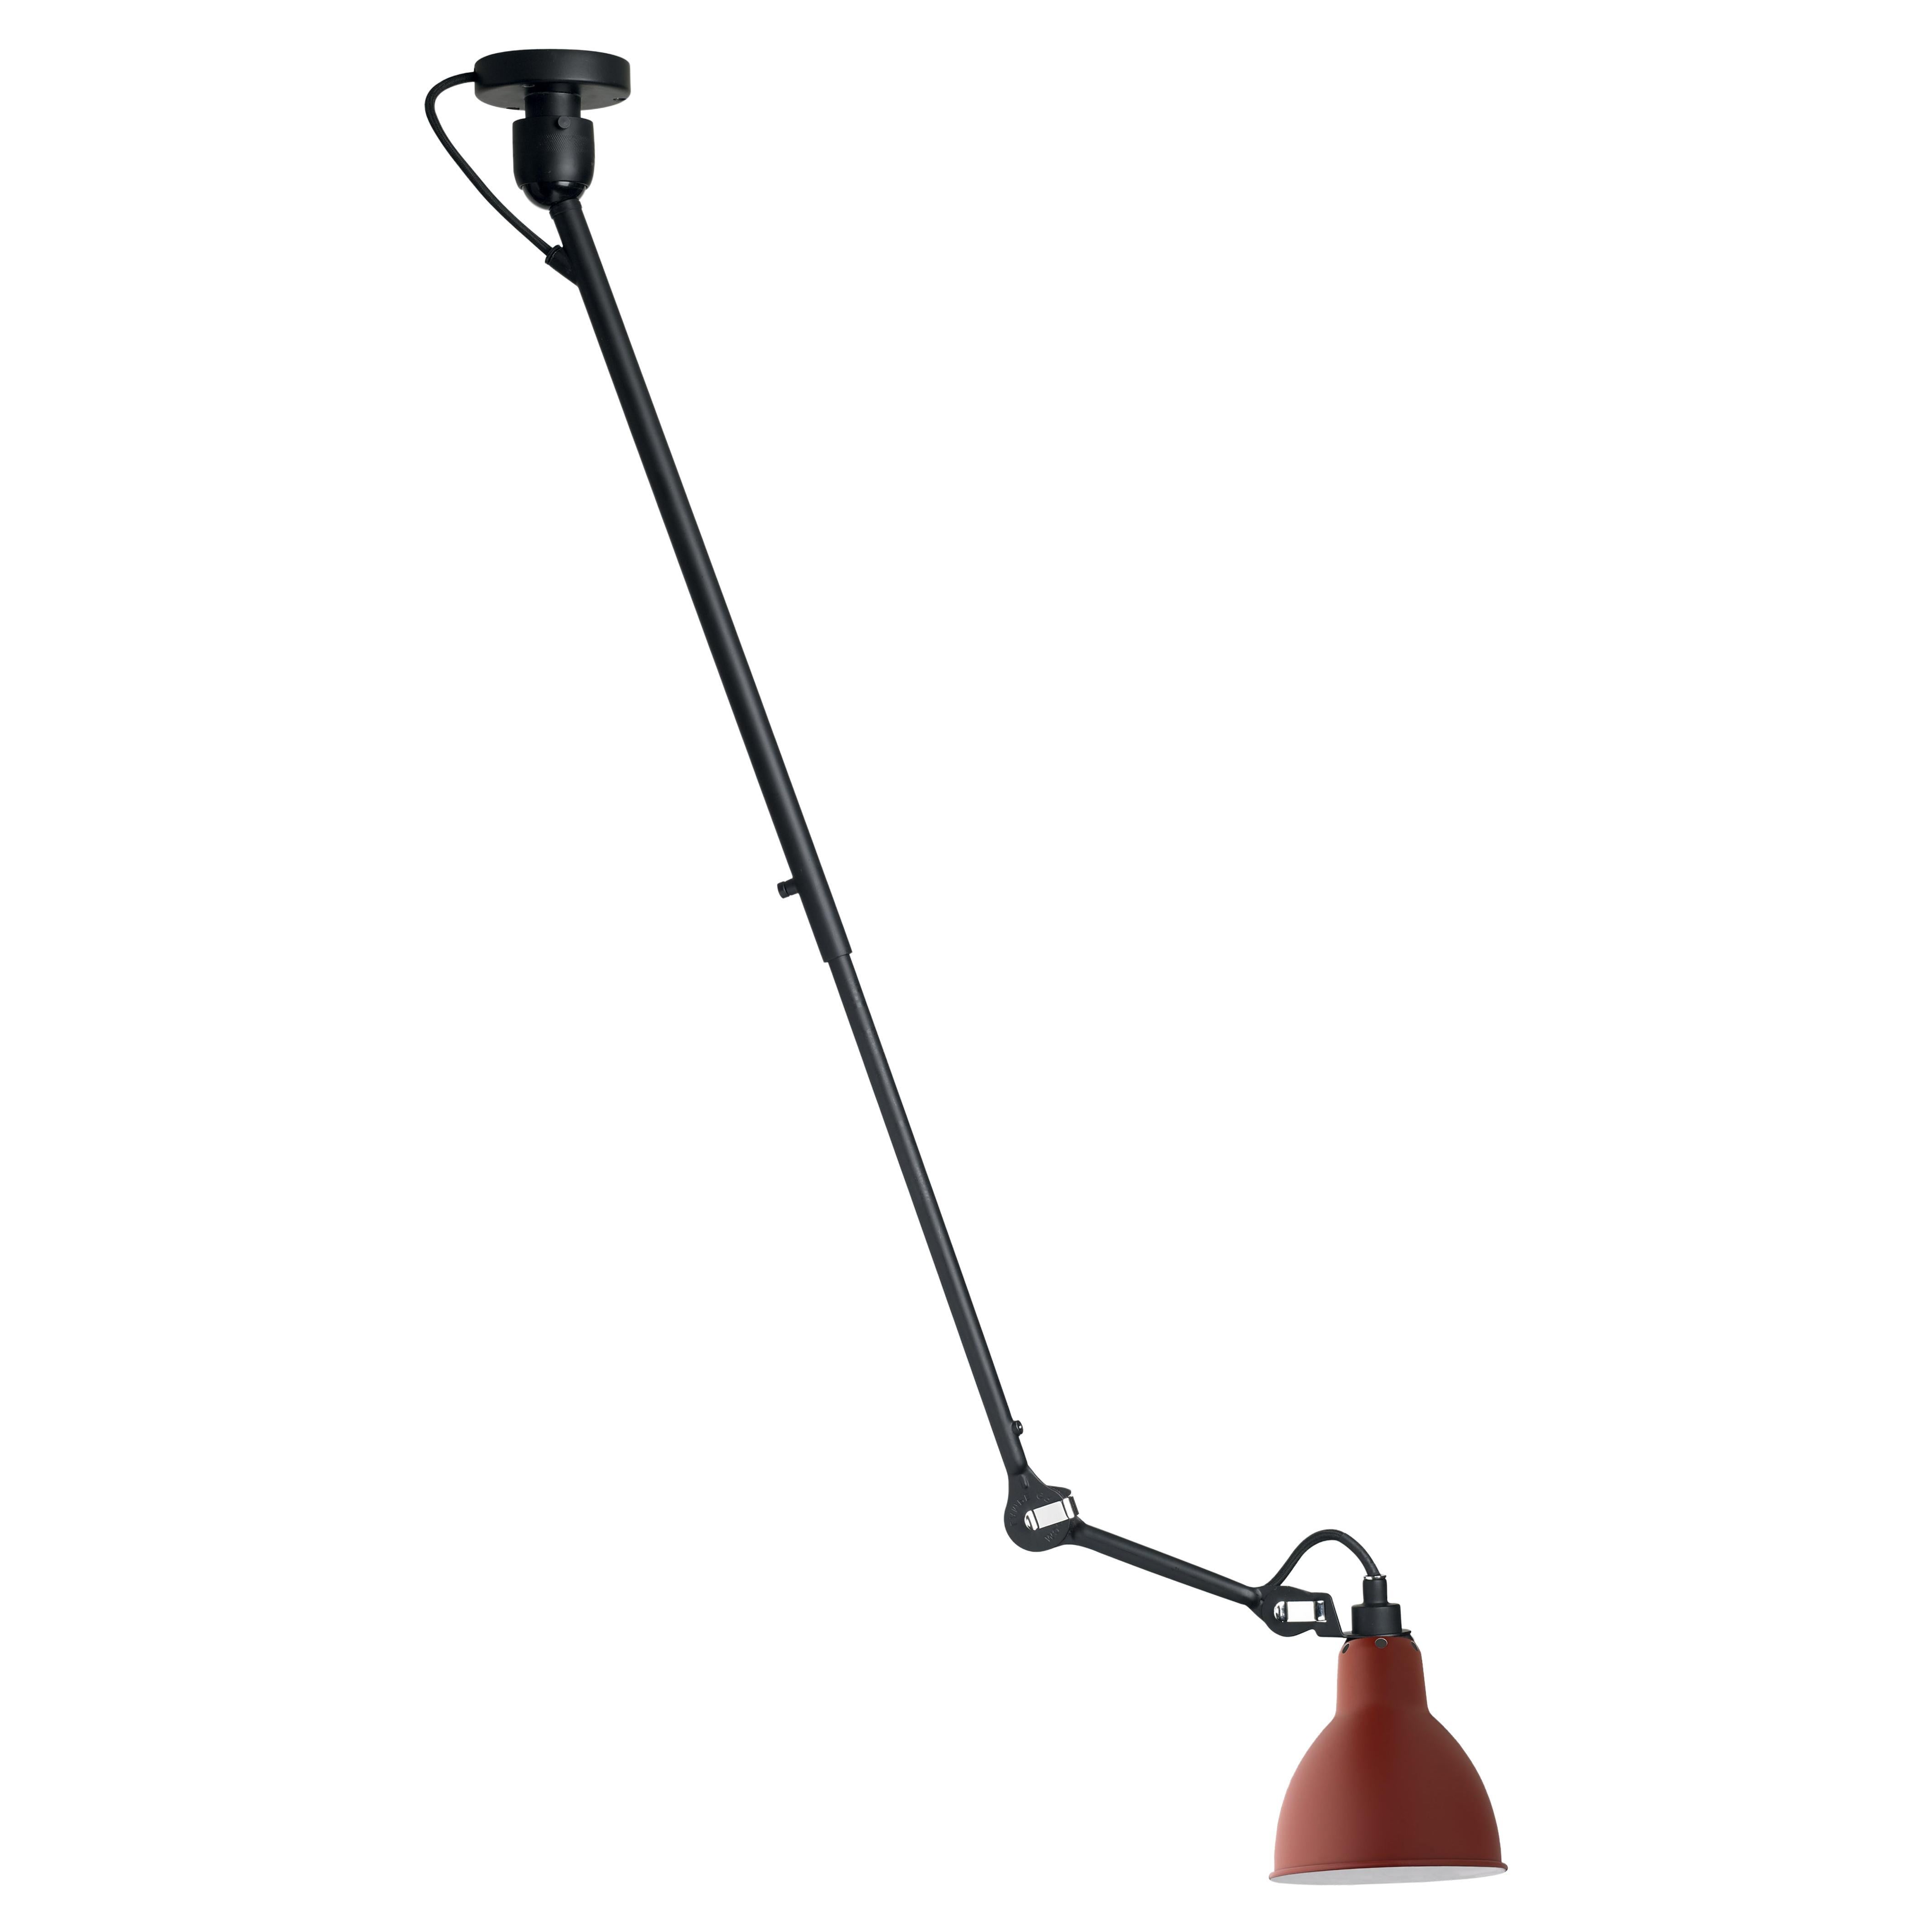 DCW Editions La Lampe Gras N°302 Pendelleuchte mit schwarzem Arm und rotem Schirm